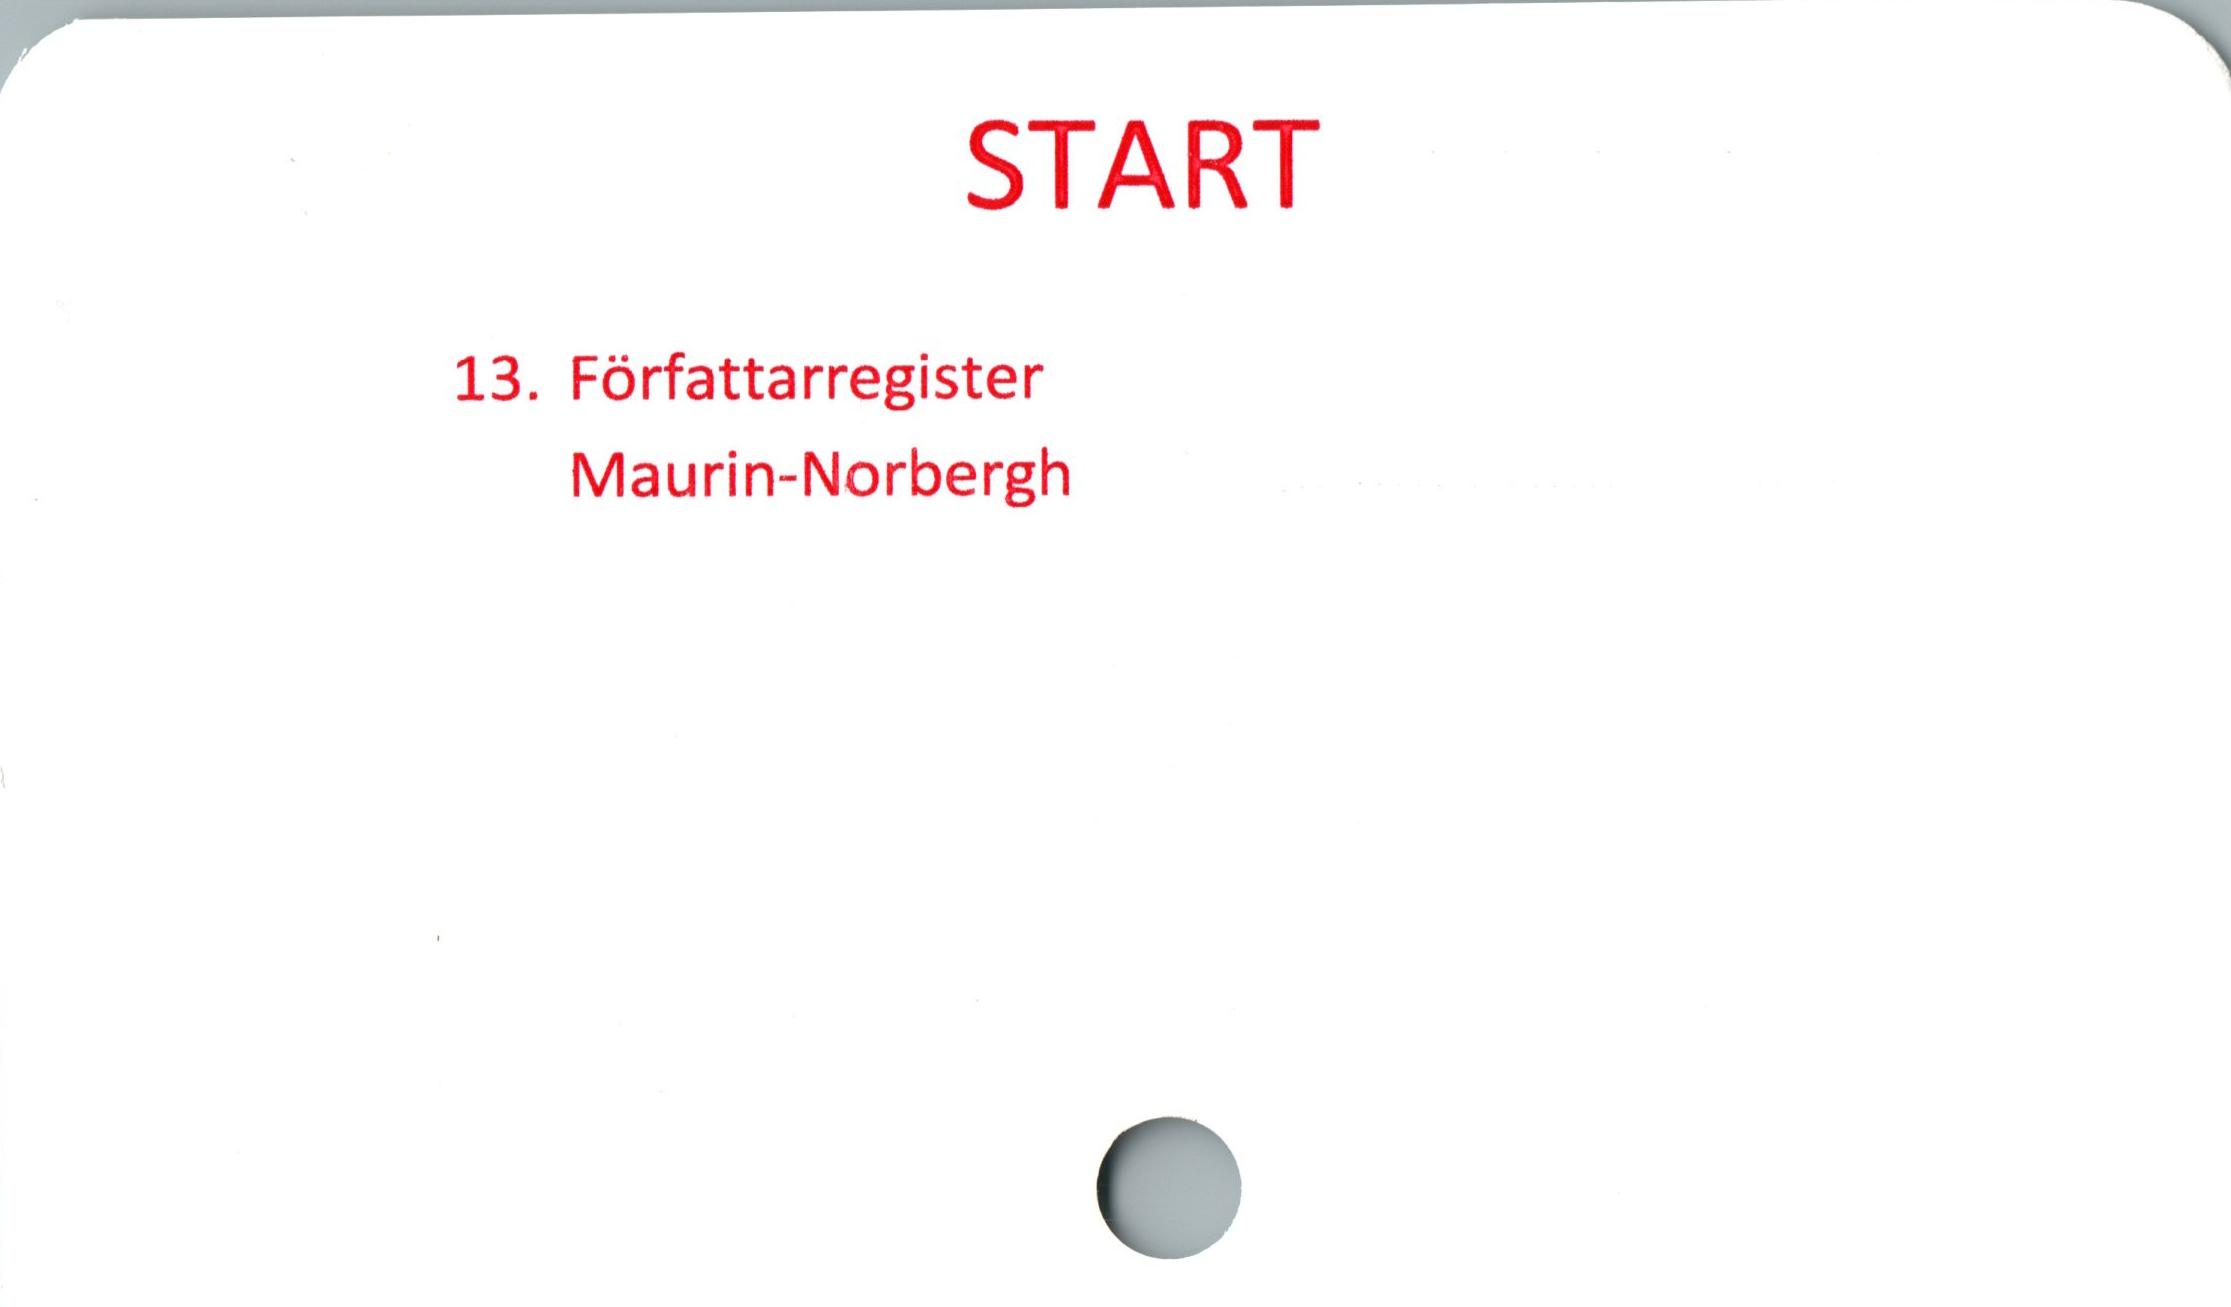  ﻿START

13. Författarregister
Maurin-Norbergh